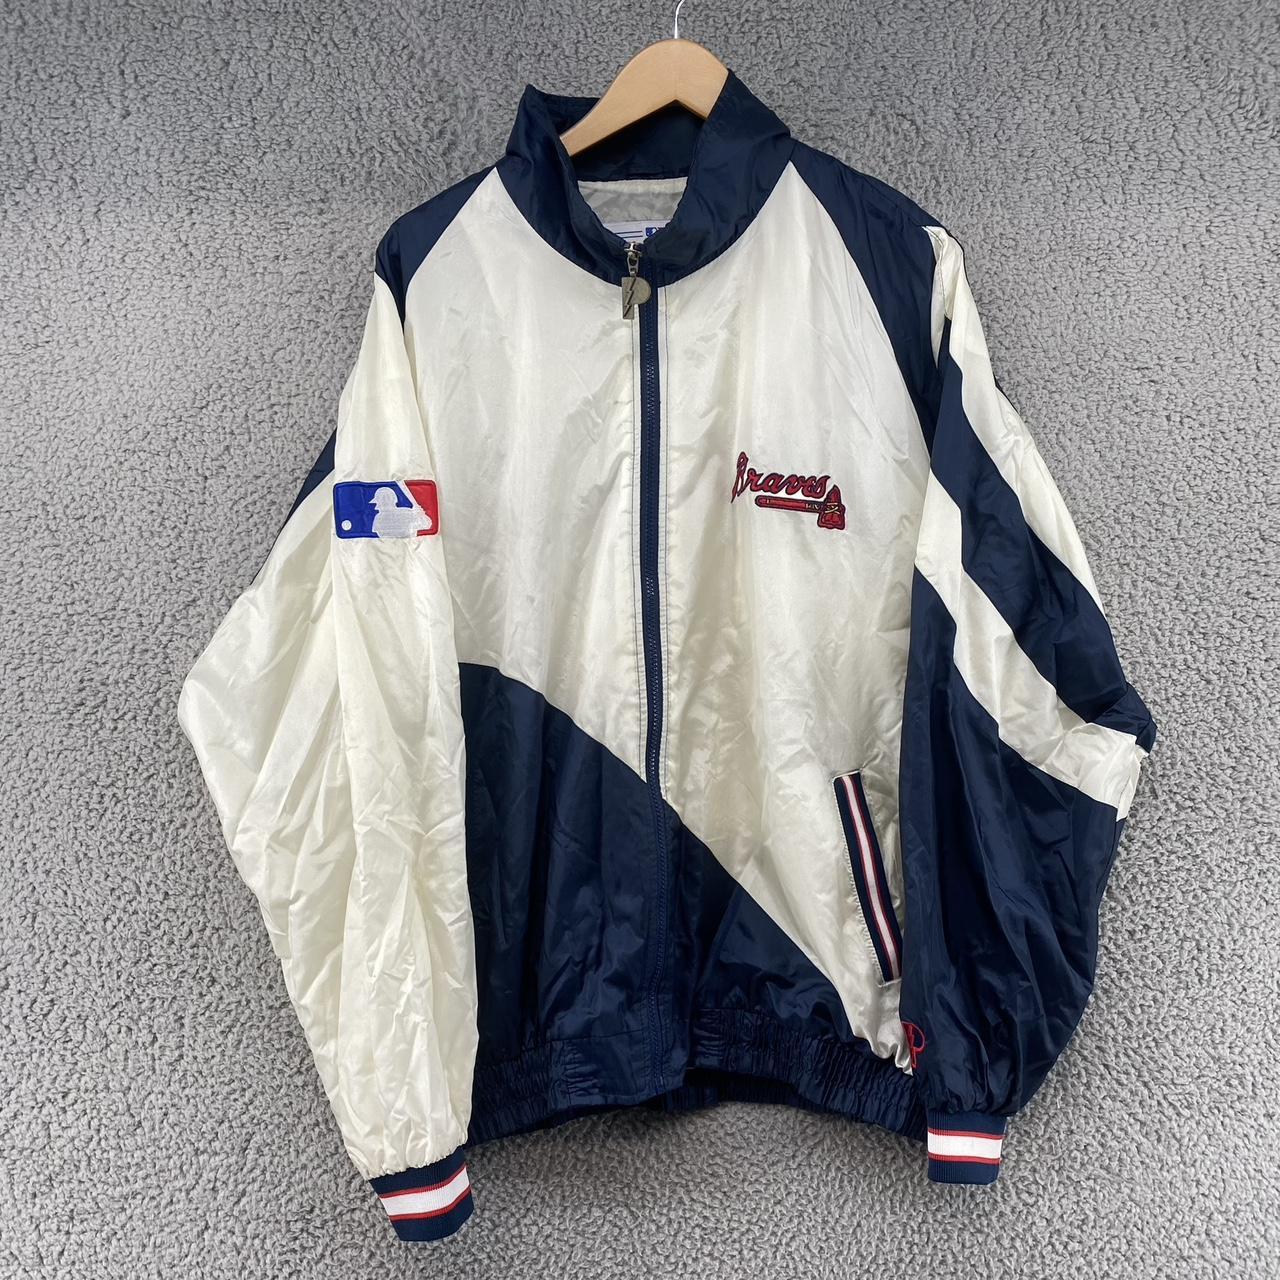 Maker of Jacket MLB Atlanta Braves Vintage Pro Player Leather